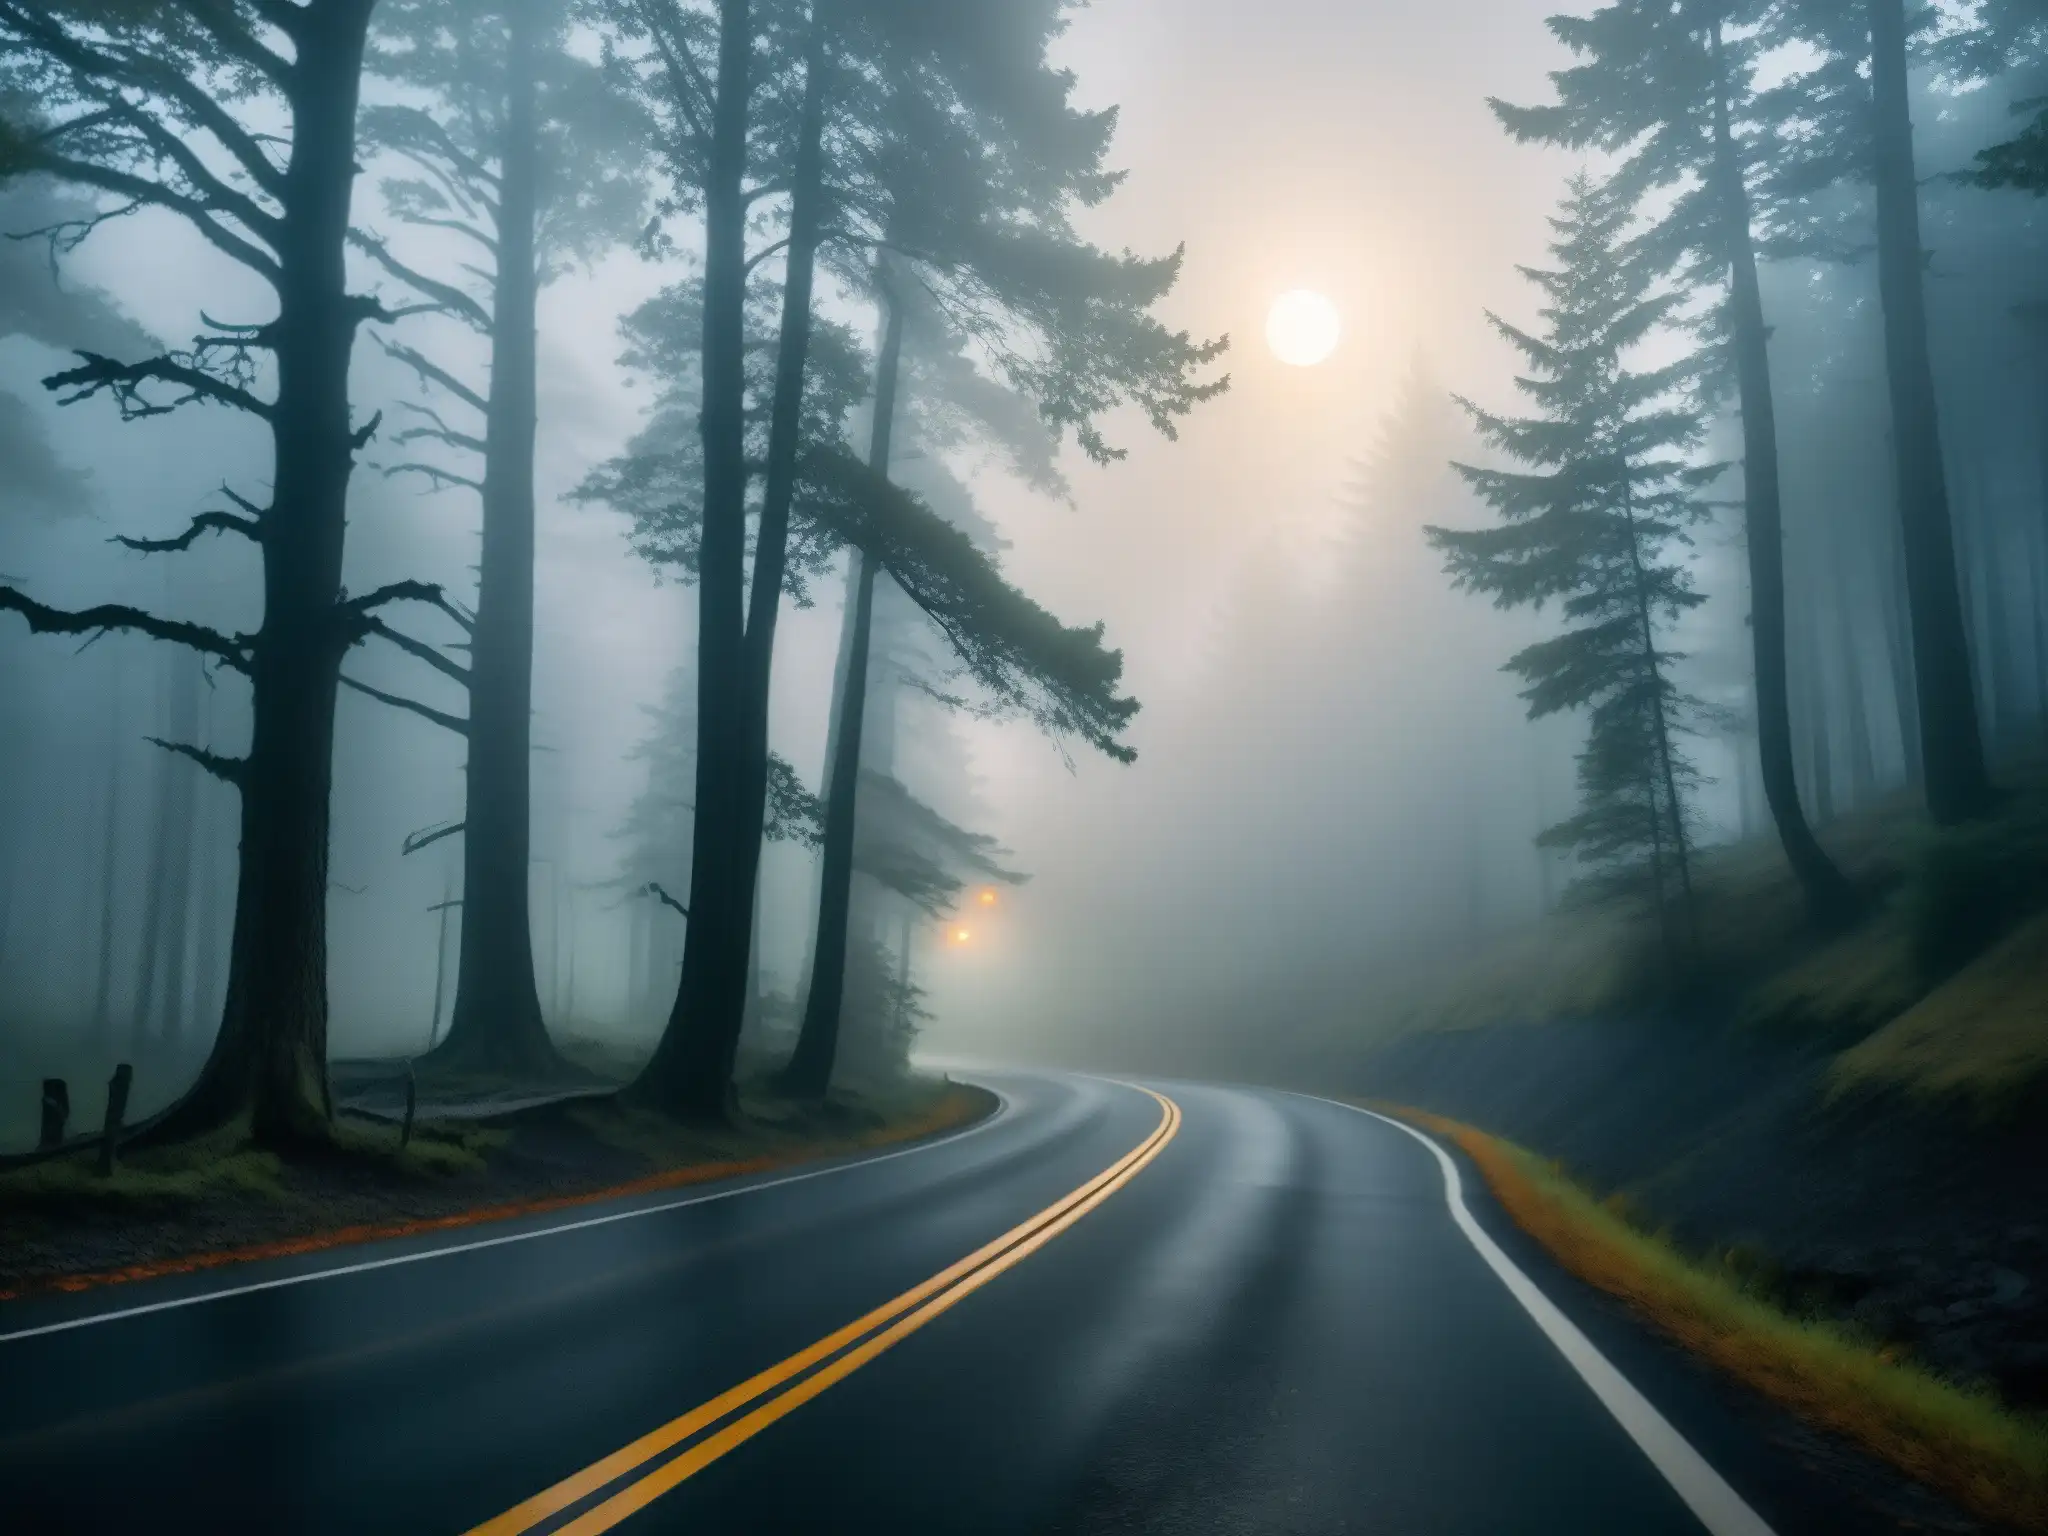 Una carretera solitaria se adentra en un bosque misterioso, iluminada por la luna